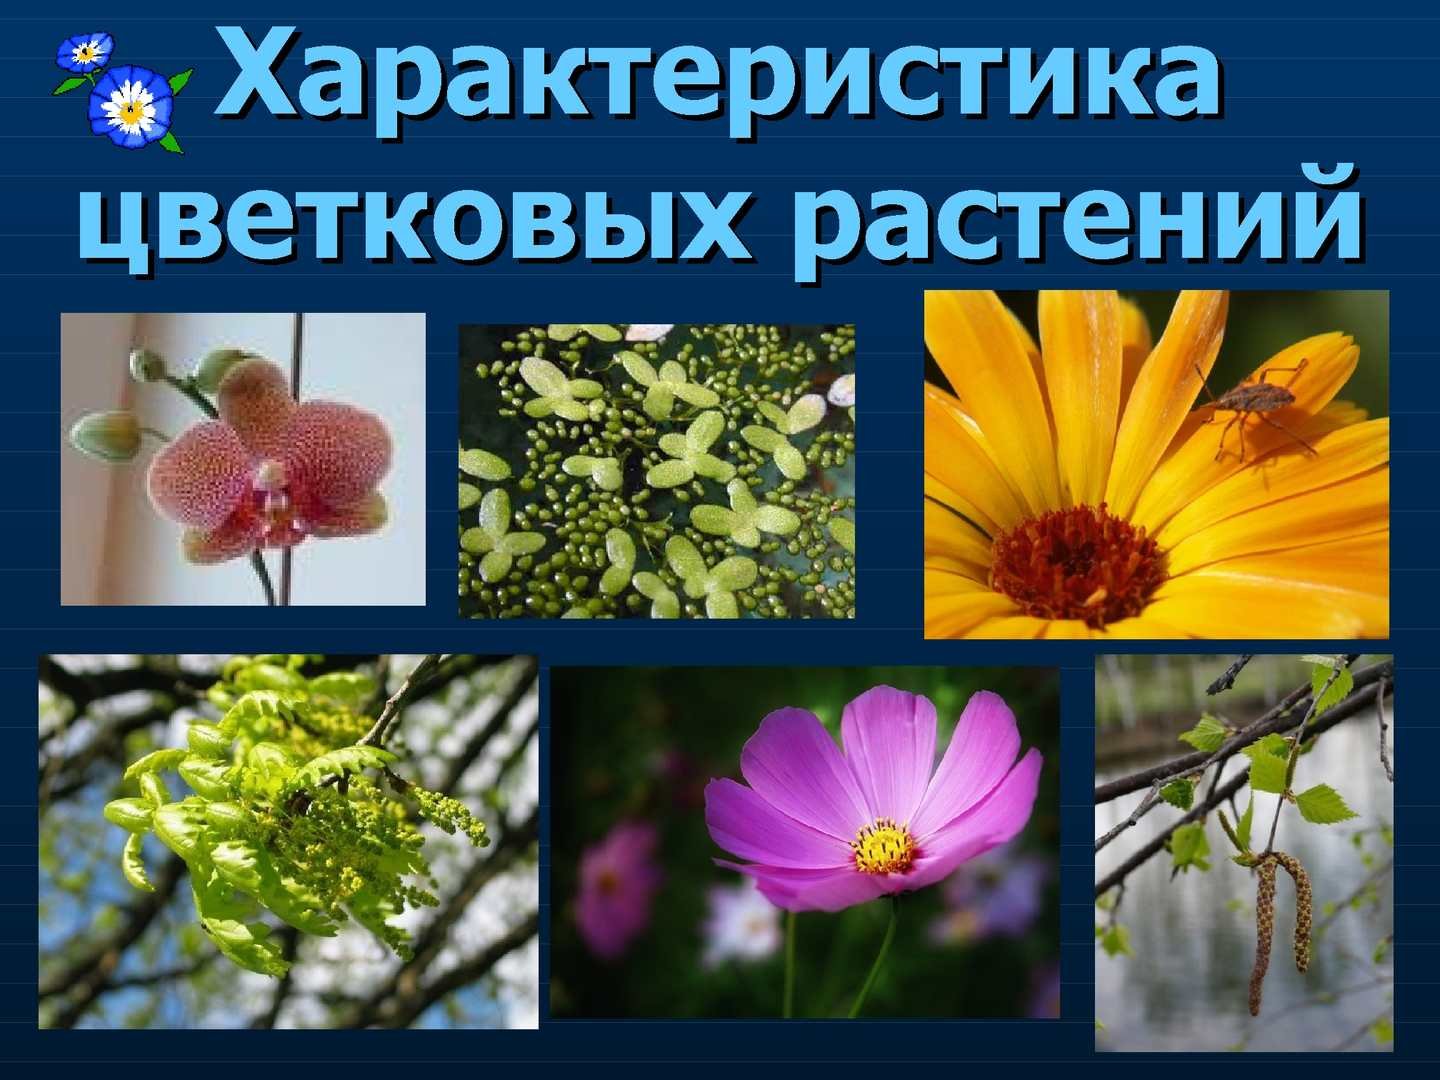 Разнообразие растений. Двудольные цветковые растения. Покрытосеменных цветковых растений. Двудольные Покрытосеменные растения. Многообразие покрытосеменных растений растений.